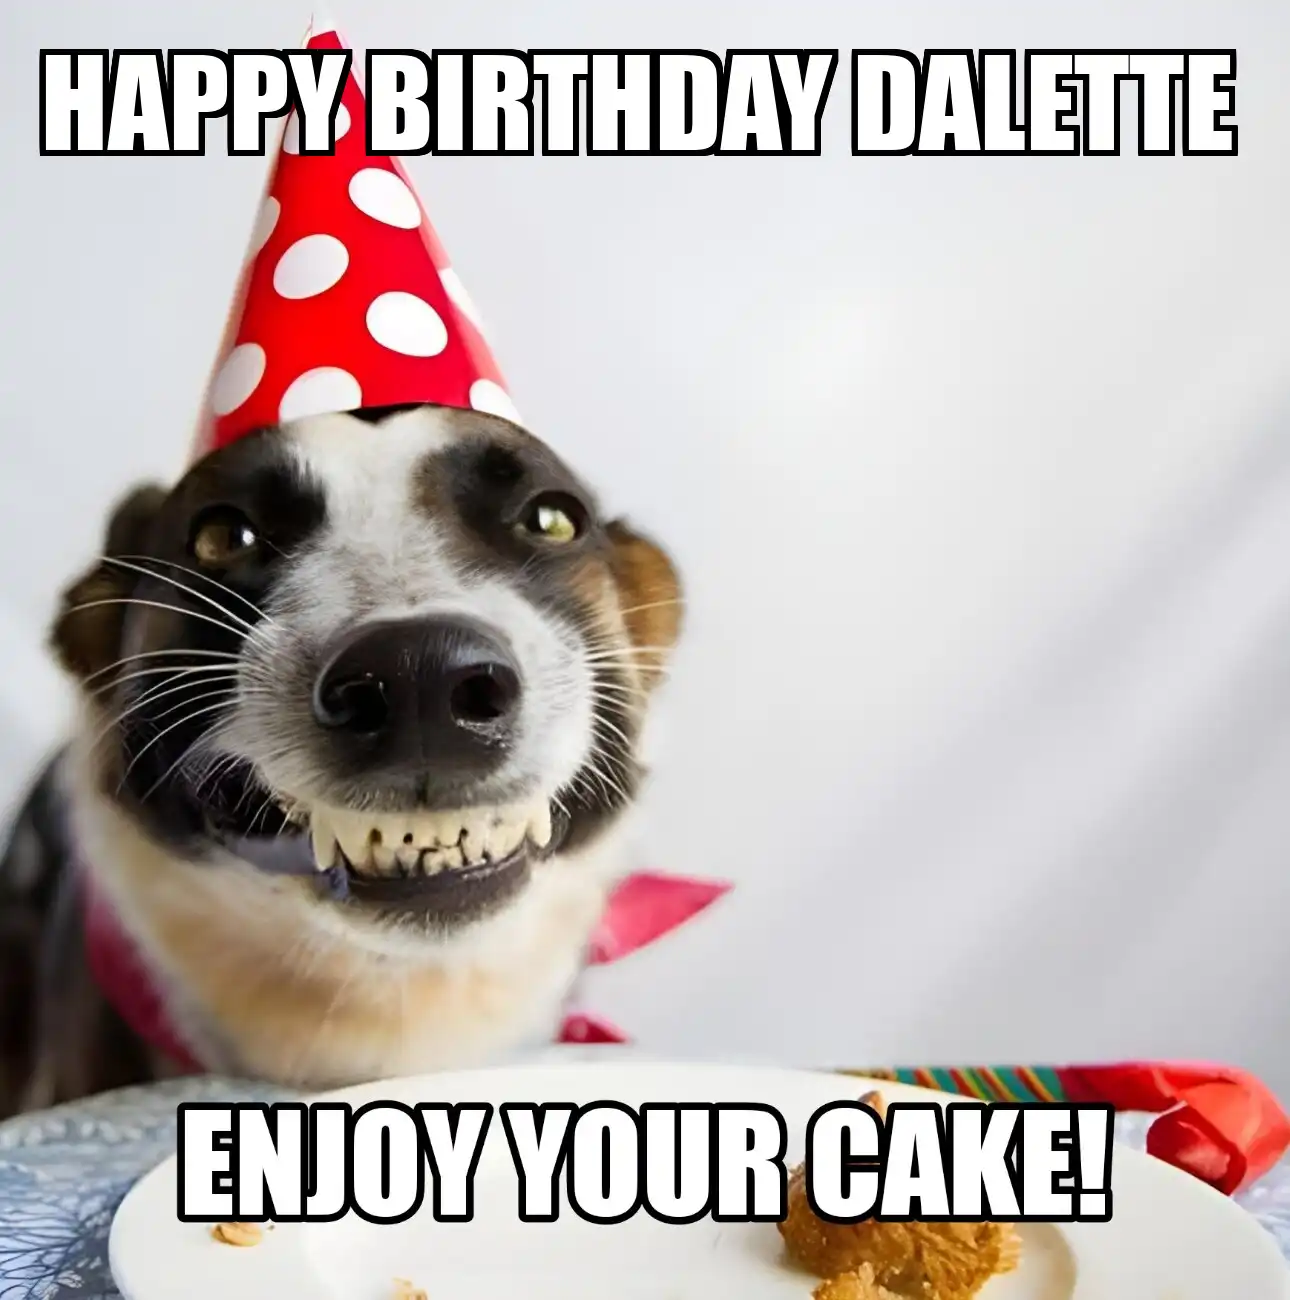 Happy Birthday Dalette Enjoy Your Cake Dog Meme